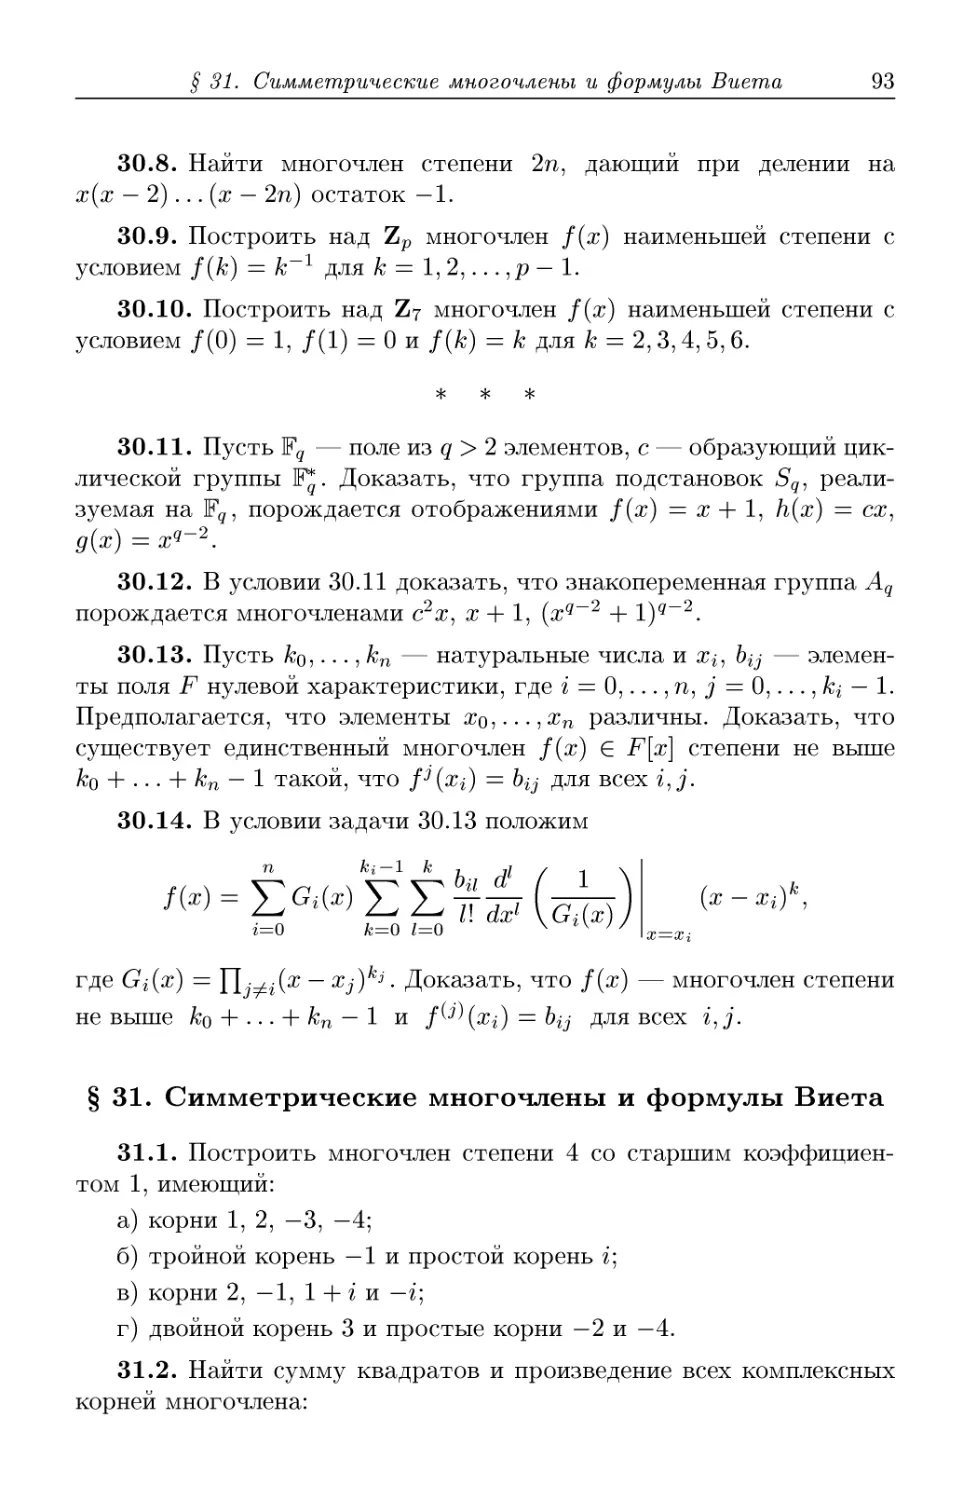 § 31. Симметрические многочлены и формулы Виета